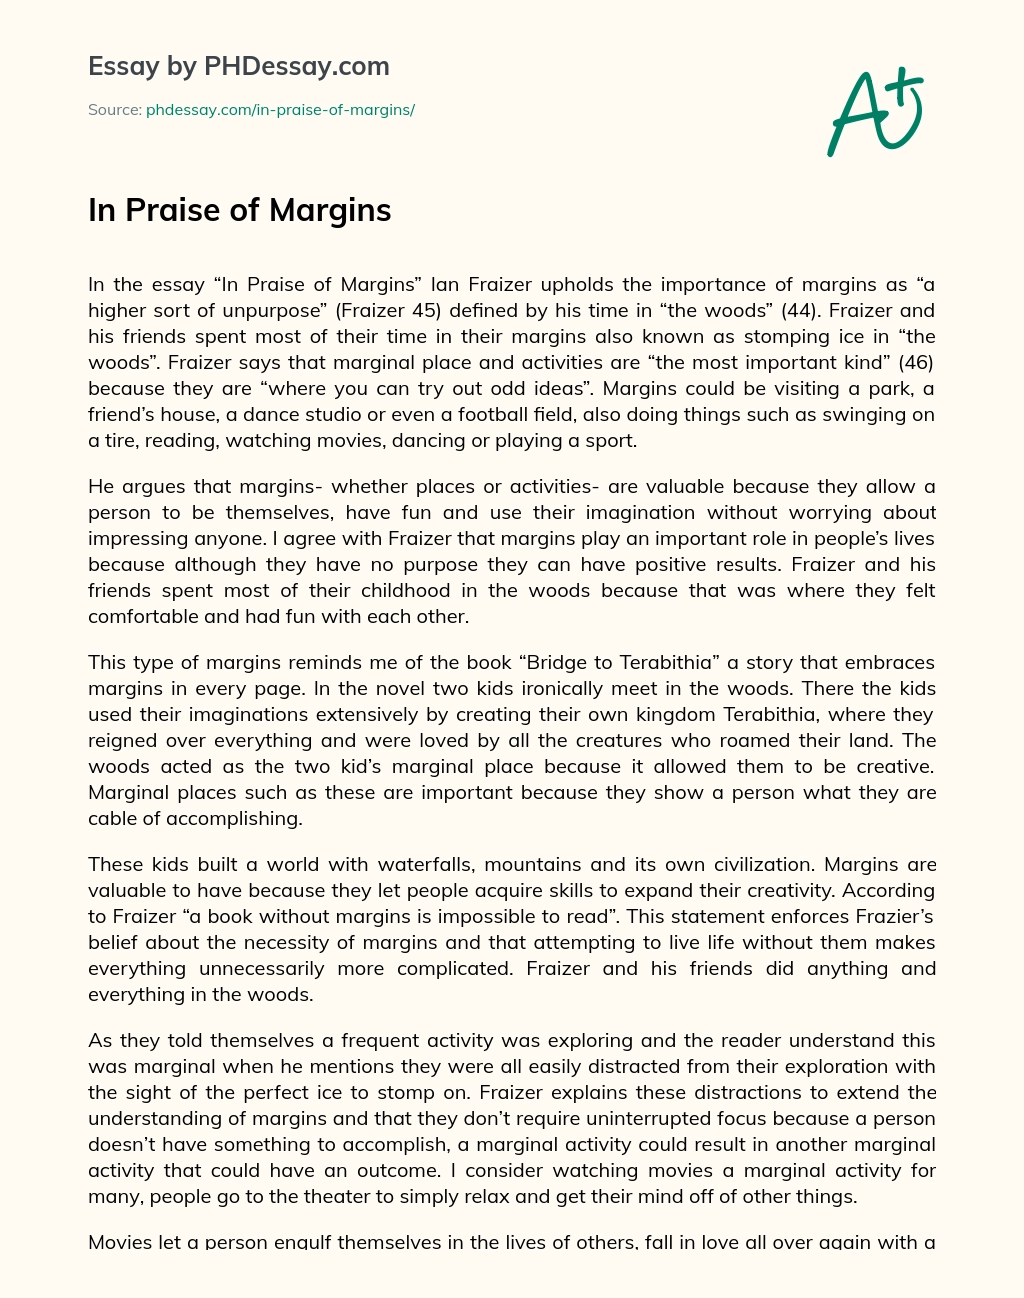 In Praise of Margins essay